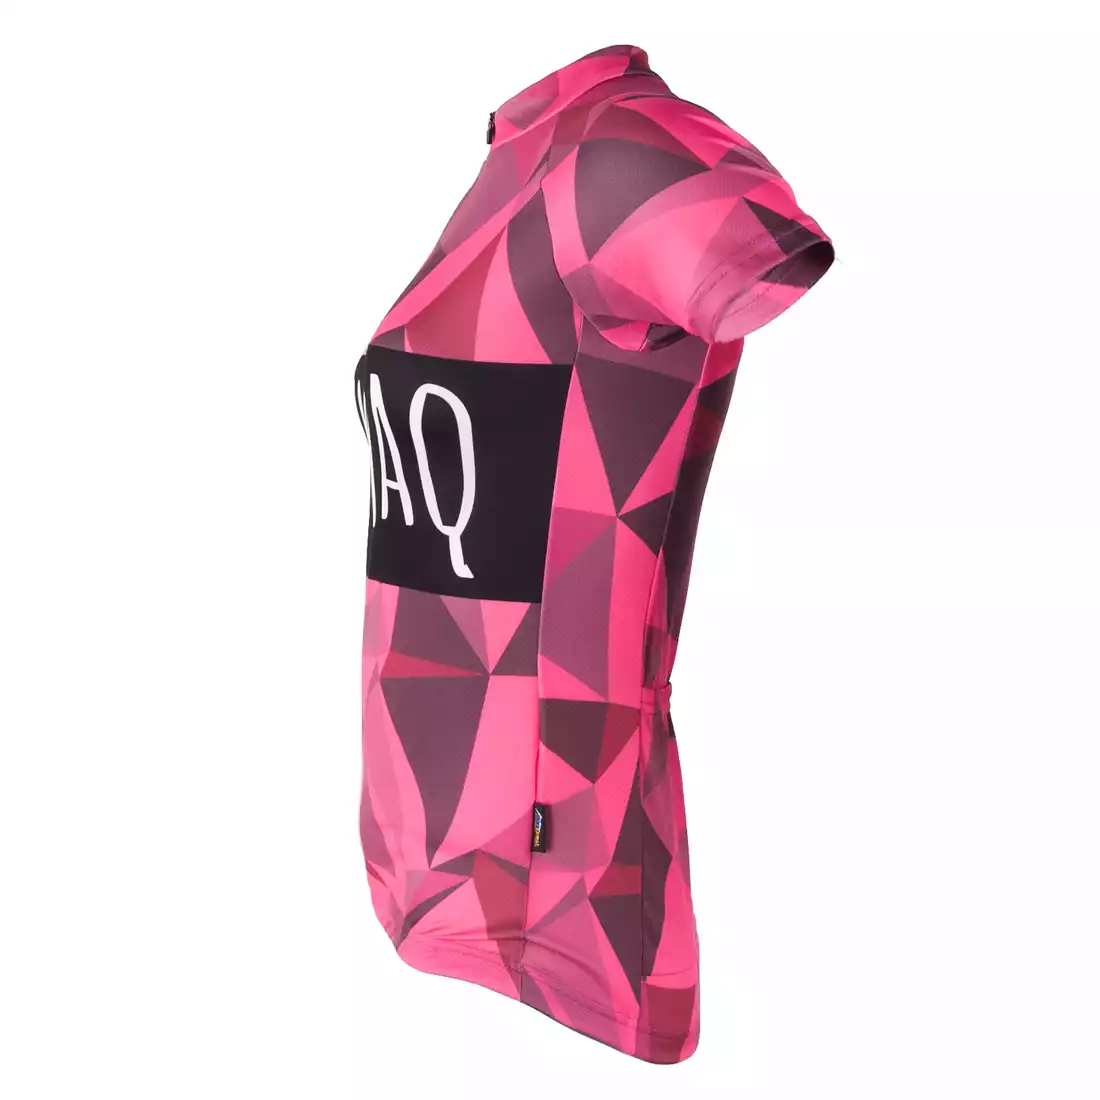 KAYMAQ RPS damska koszulka rowerowa różowa